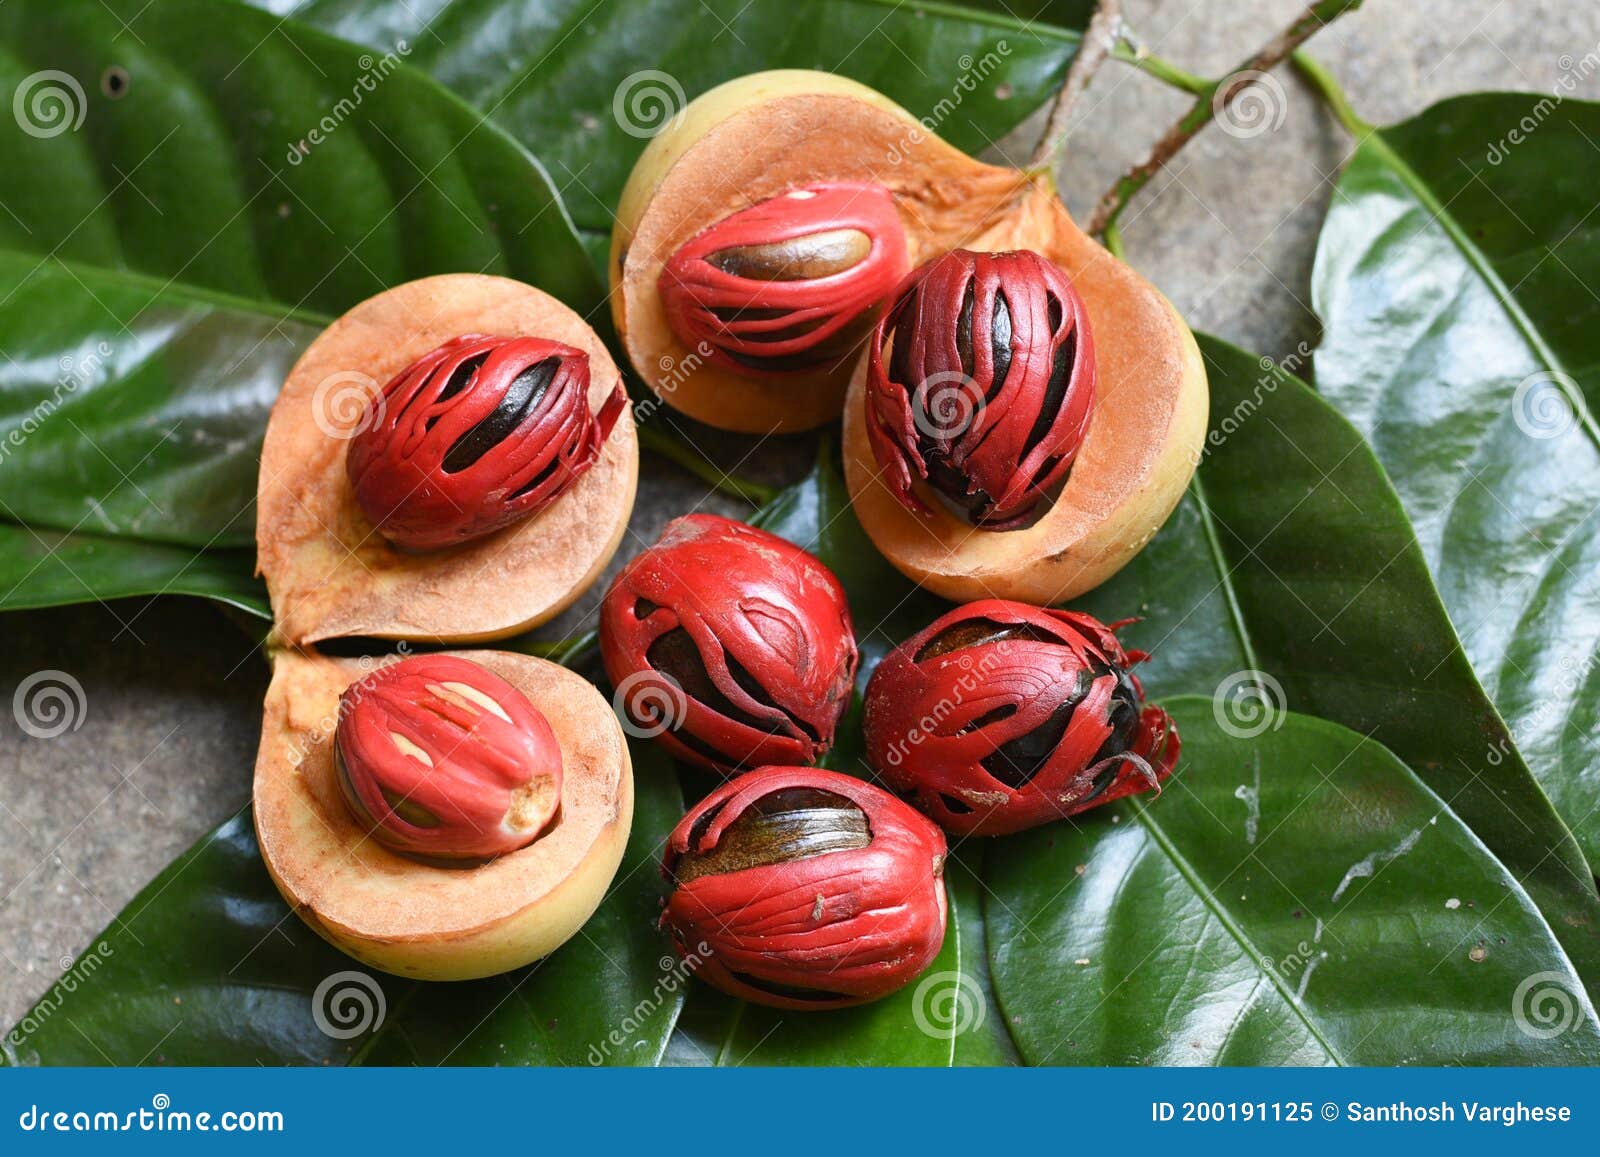 Nutmeg Many Isolated. Red Nutmeg Fruit, Seeds Kerala India Stock Image